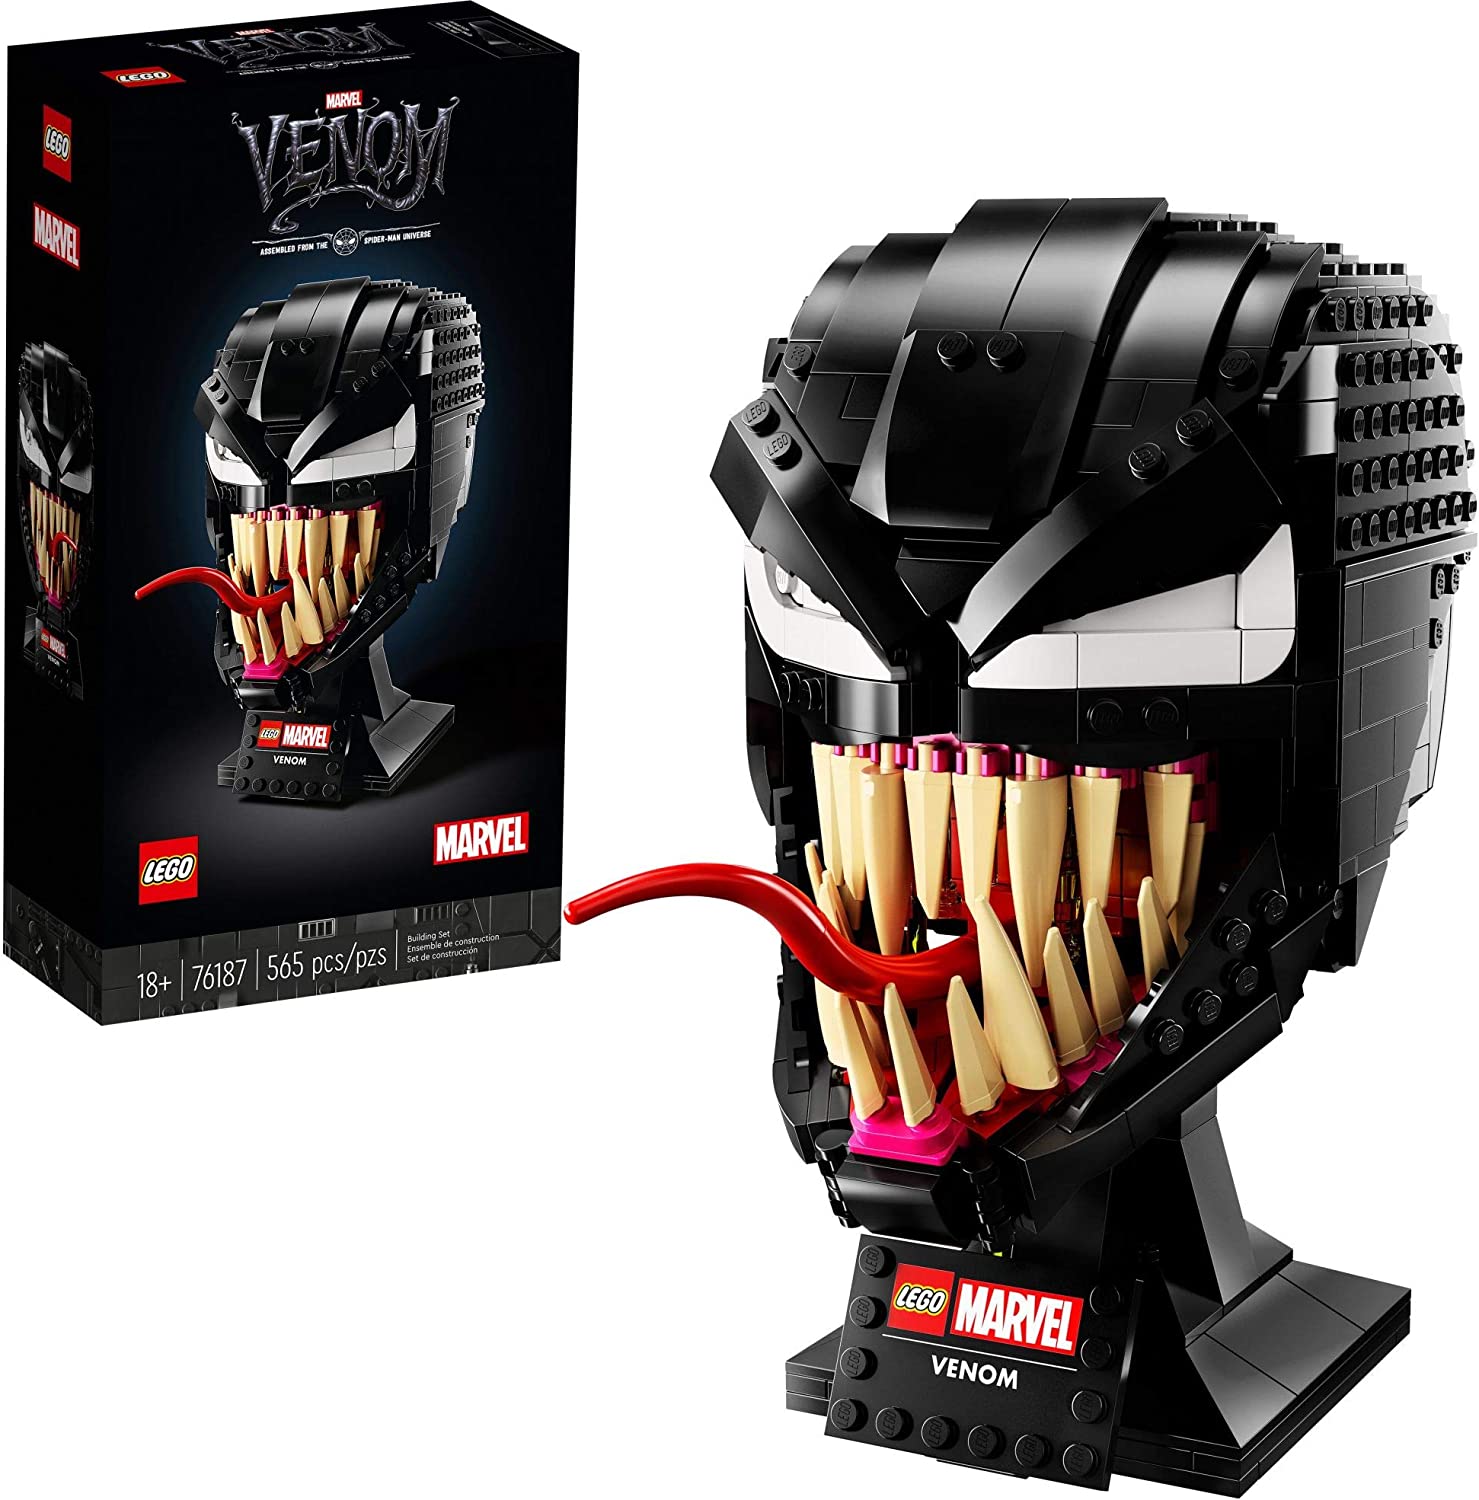 LEGO Marvel Venom Set 76187